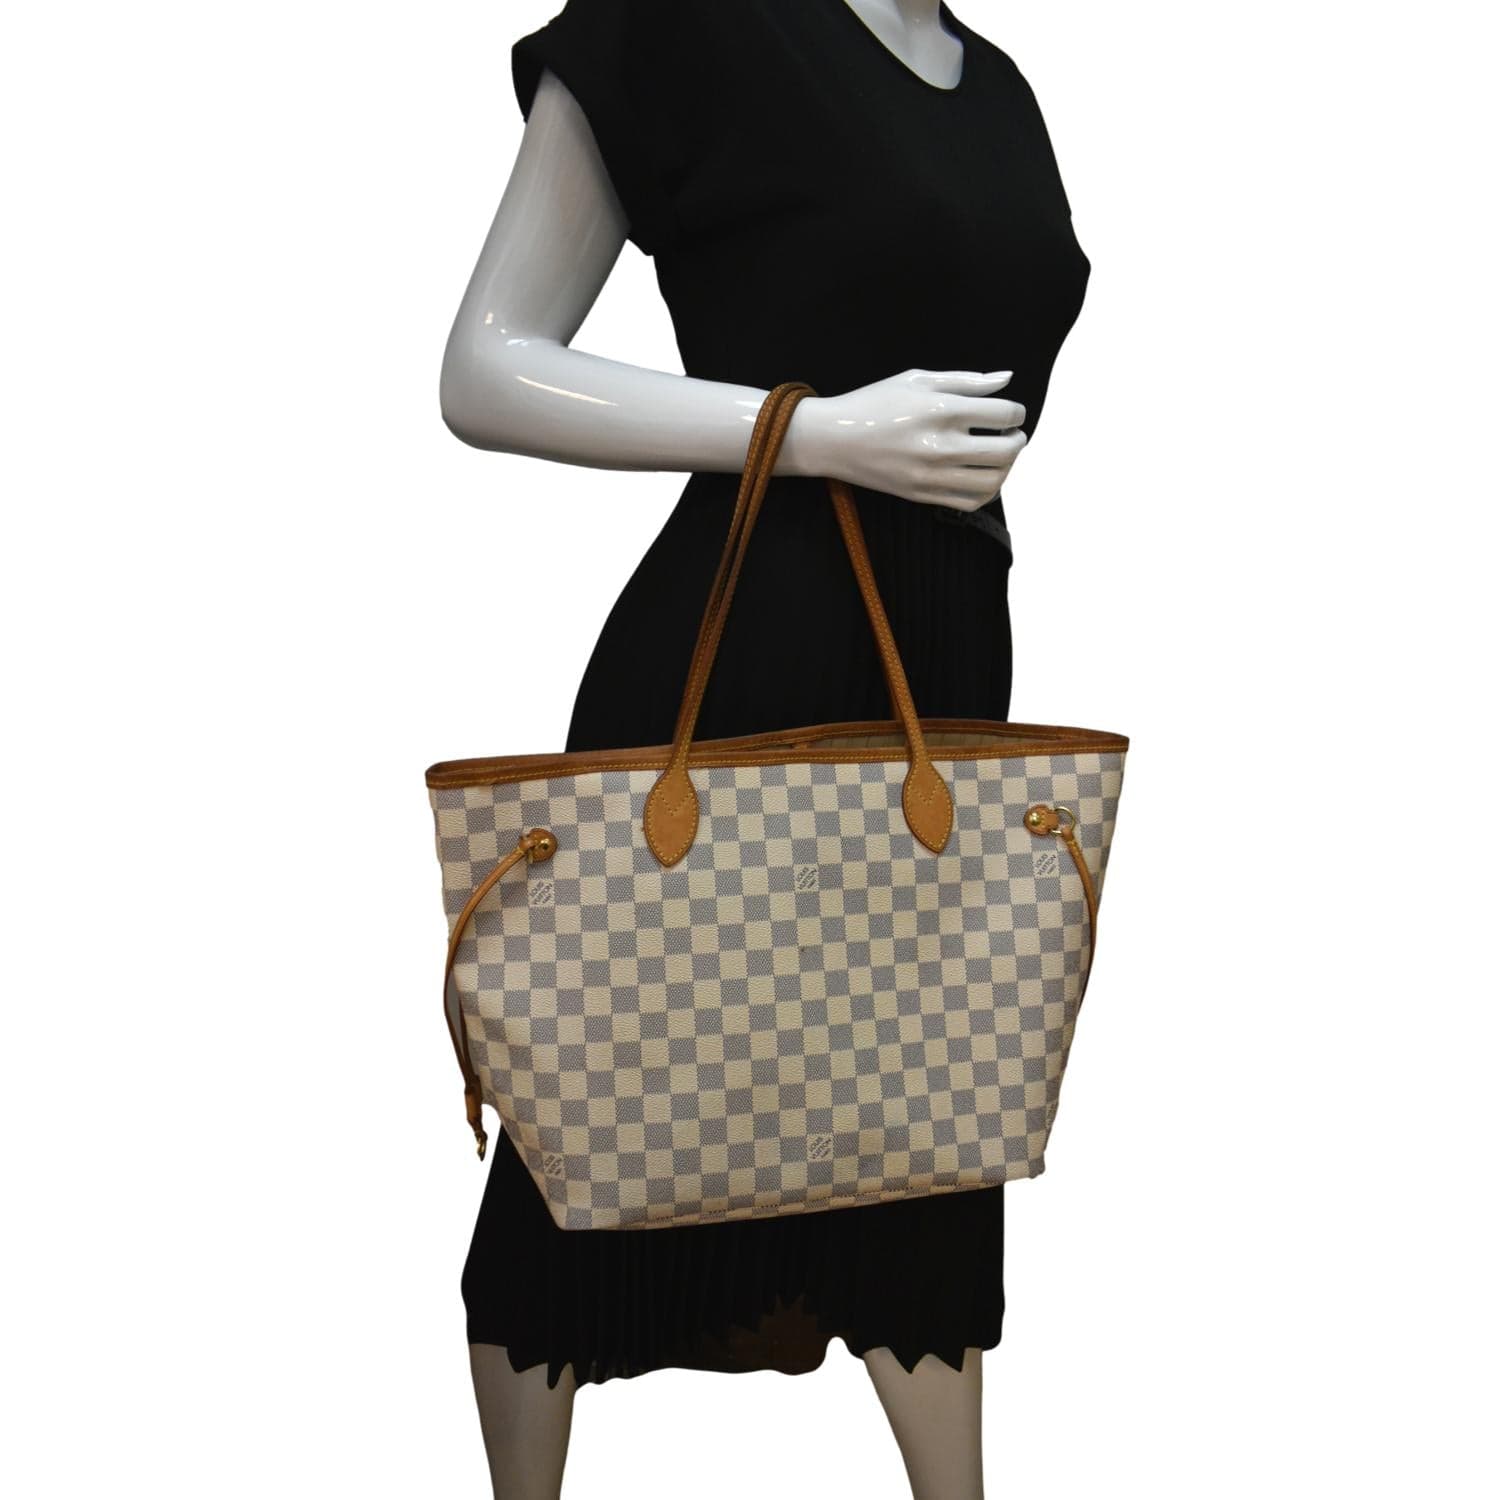 Neverfull MM Damier Azur - Women - Handbags